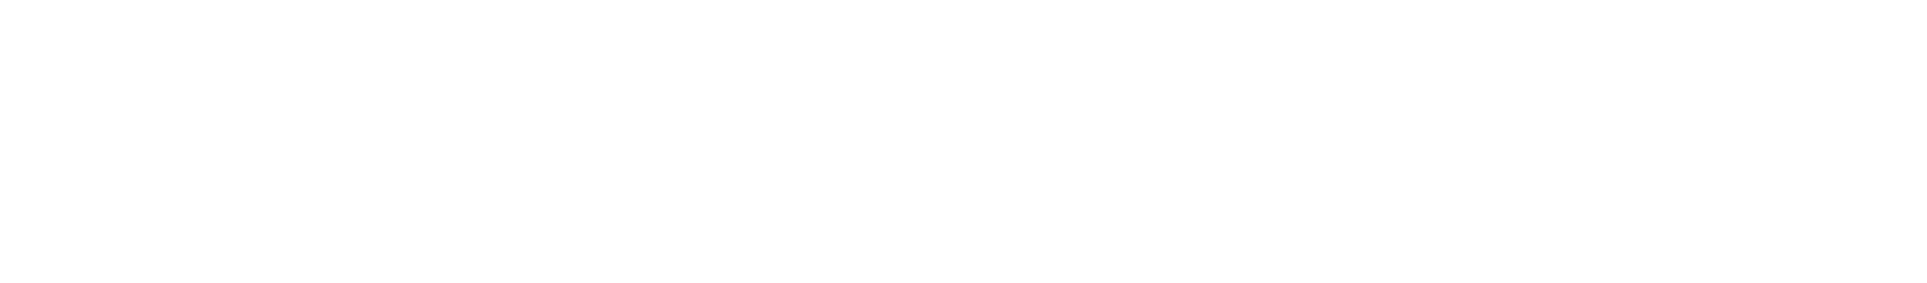 Chili_Header-2